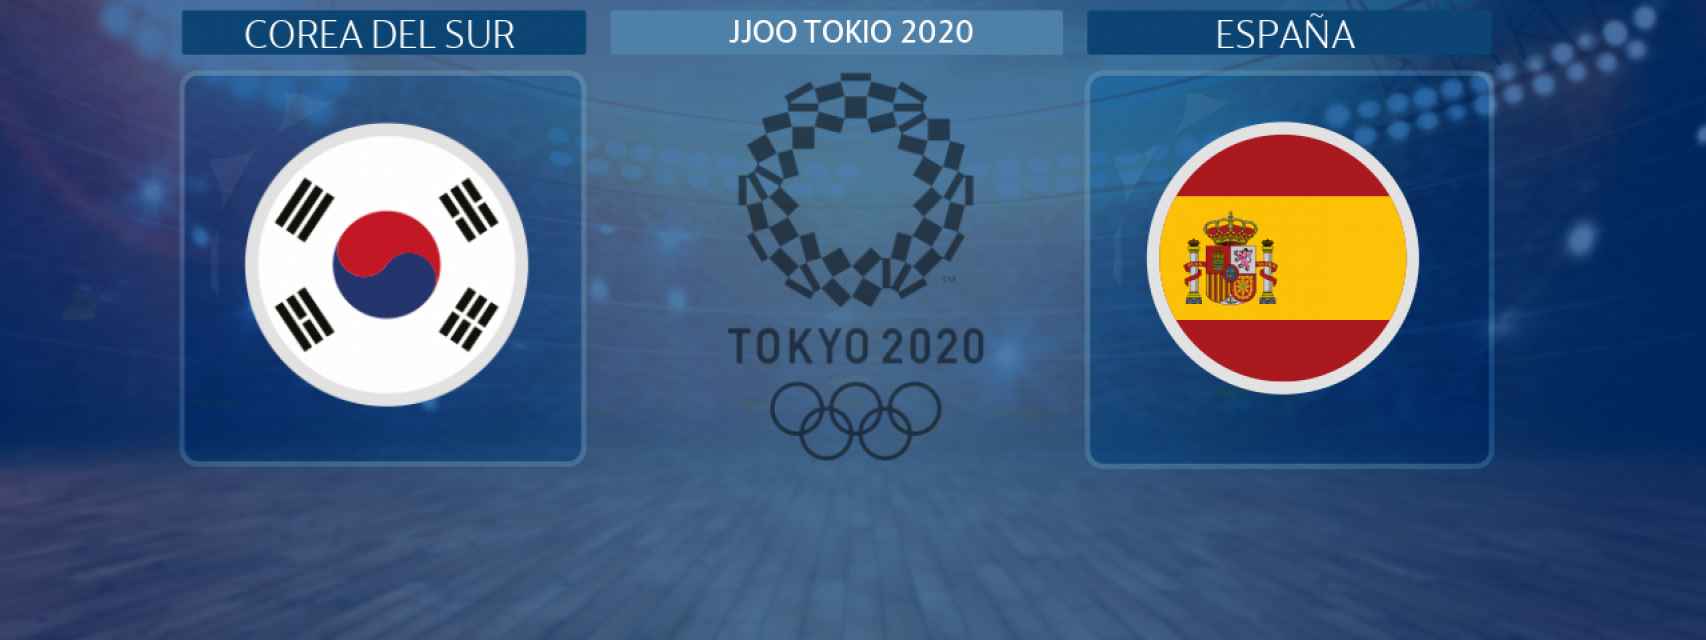 Corea del Sur - España, partido de baloncesto femenino de los JJOO Tokio 2020